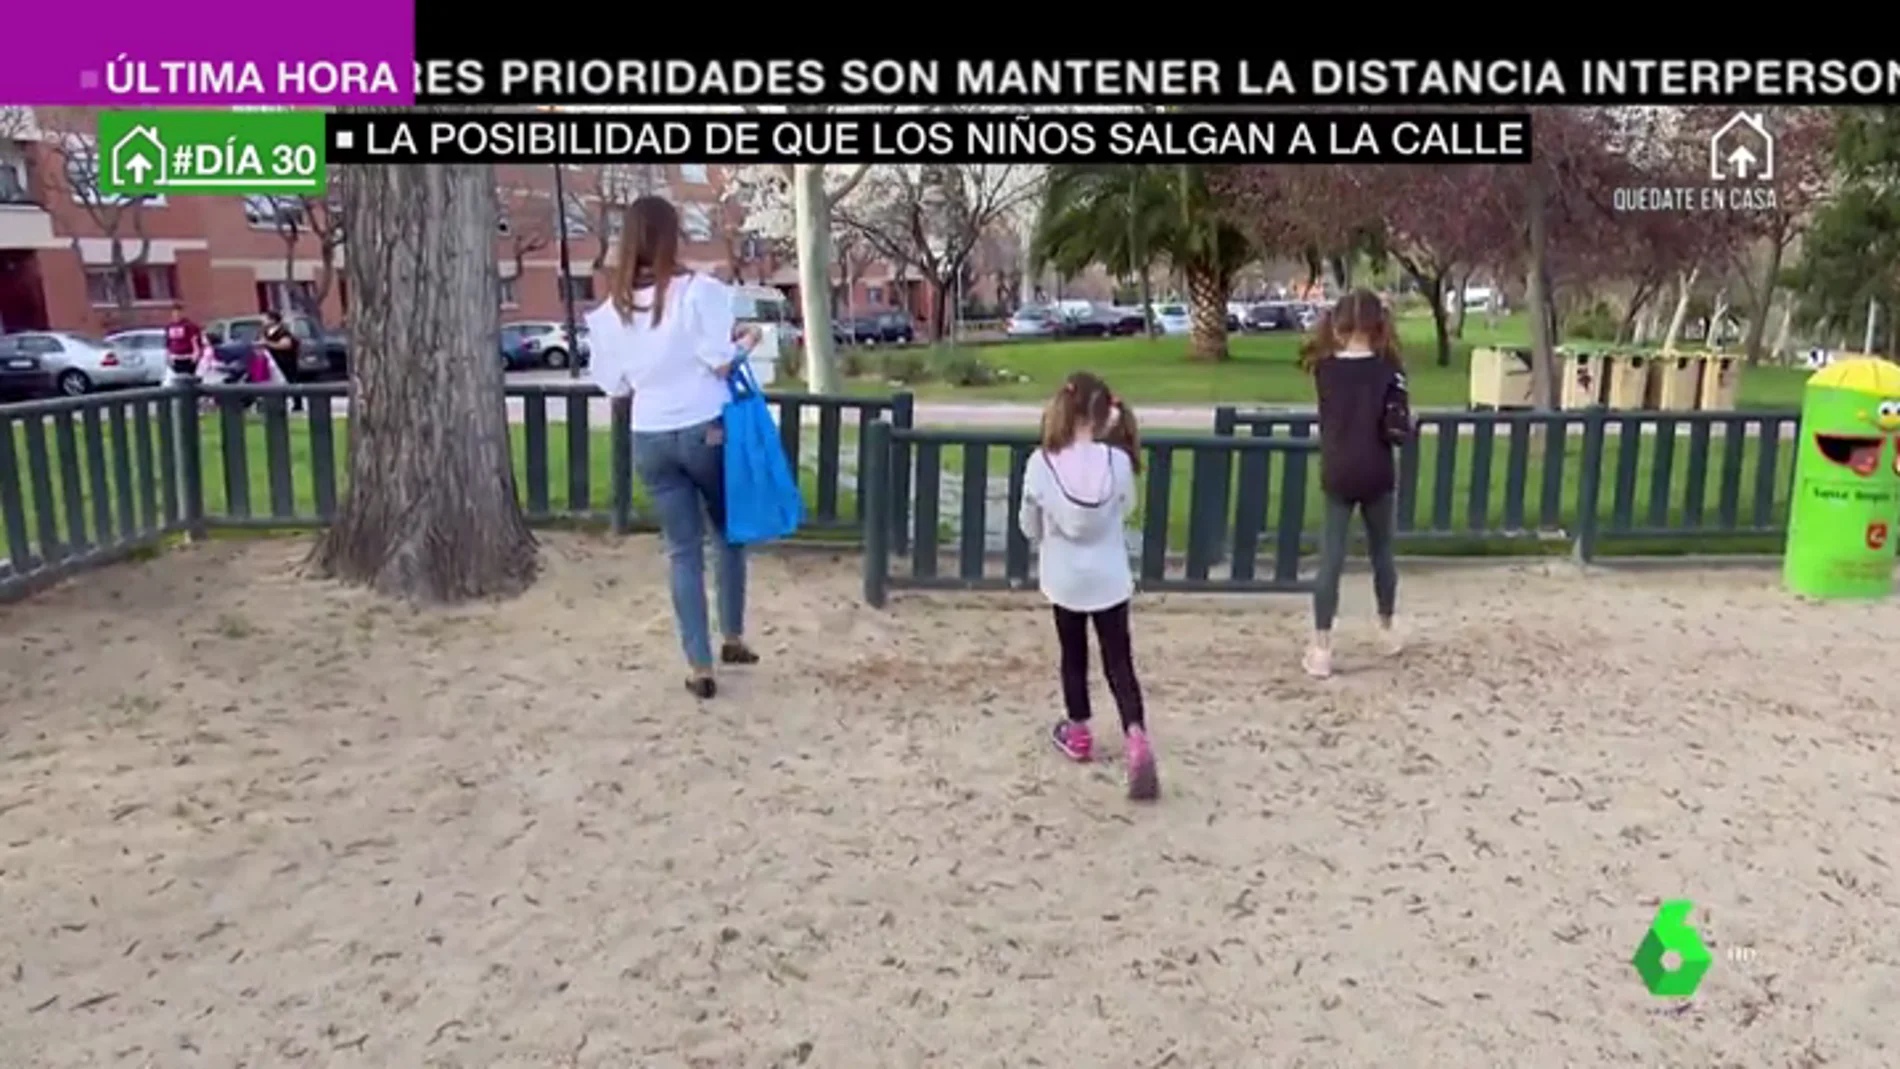 Madrid y Galicia piden al Gobierno que los niños puedan salir a la calle